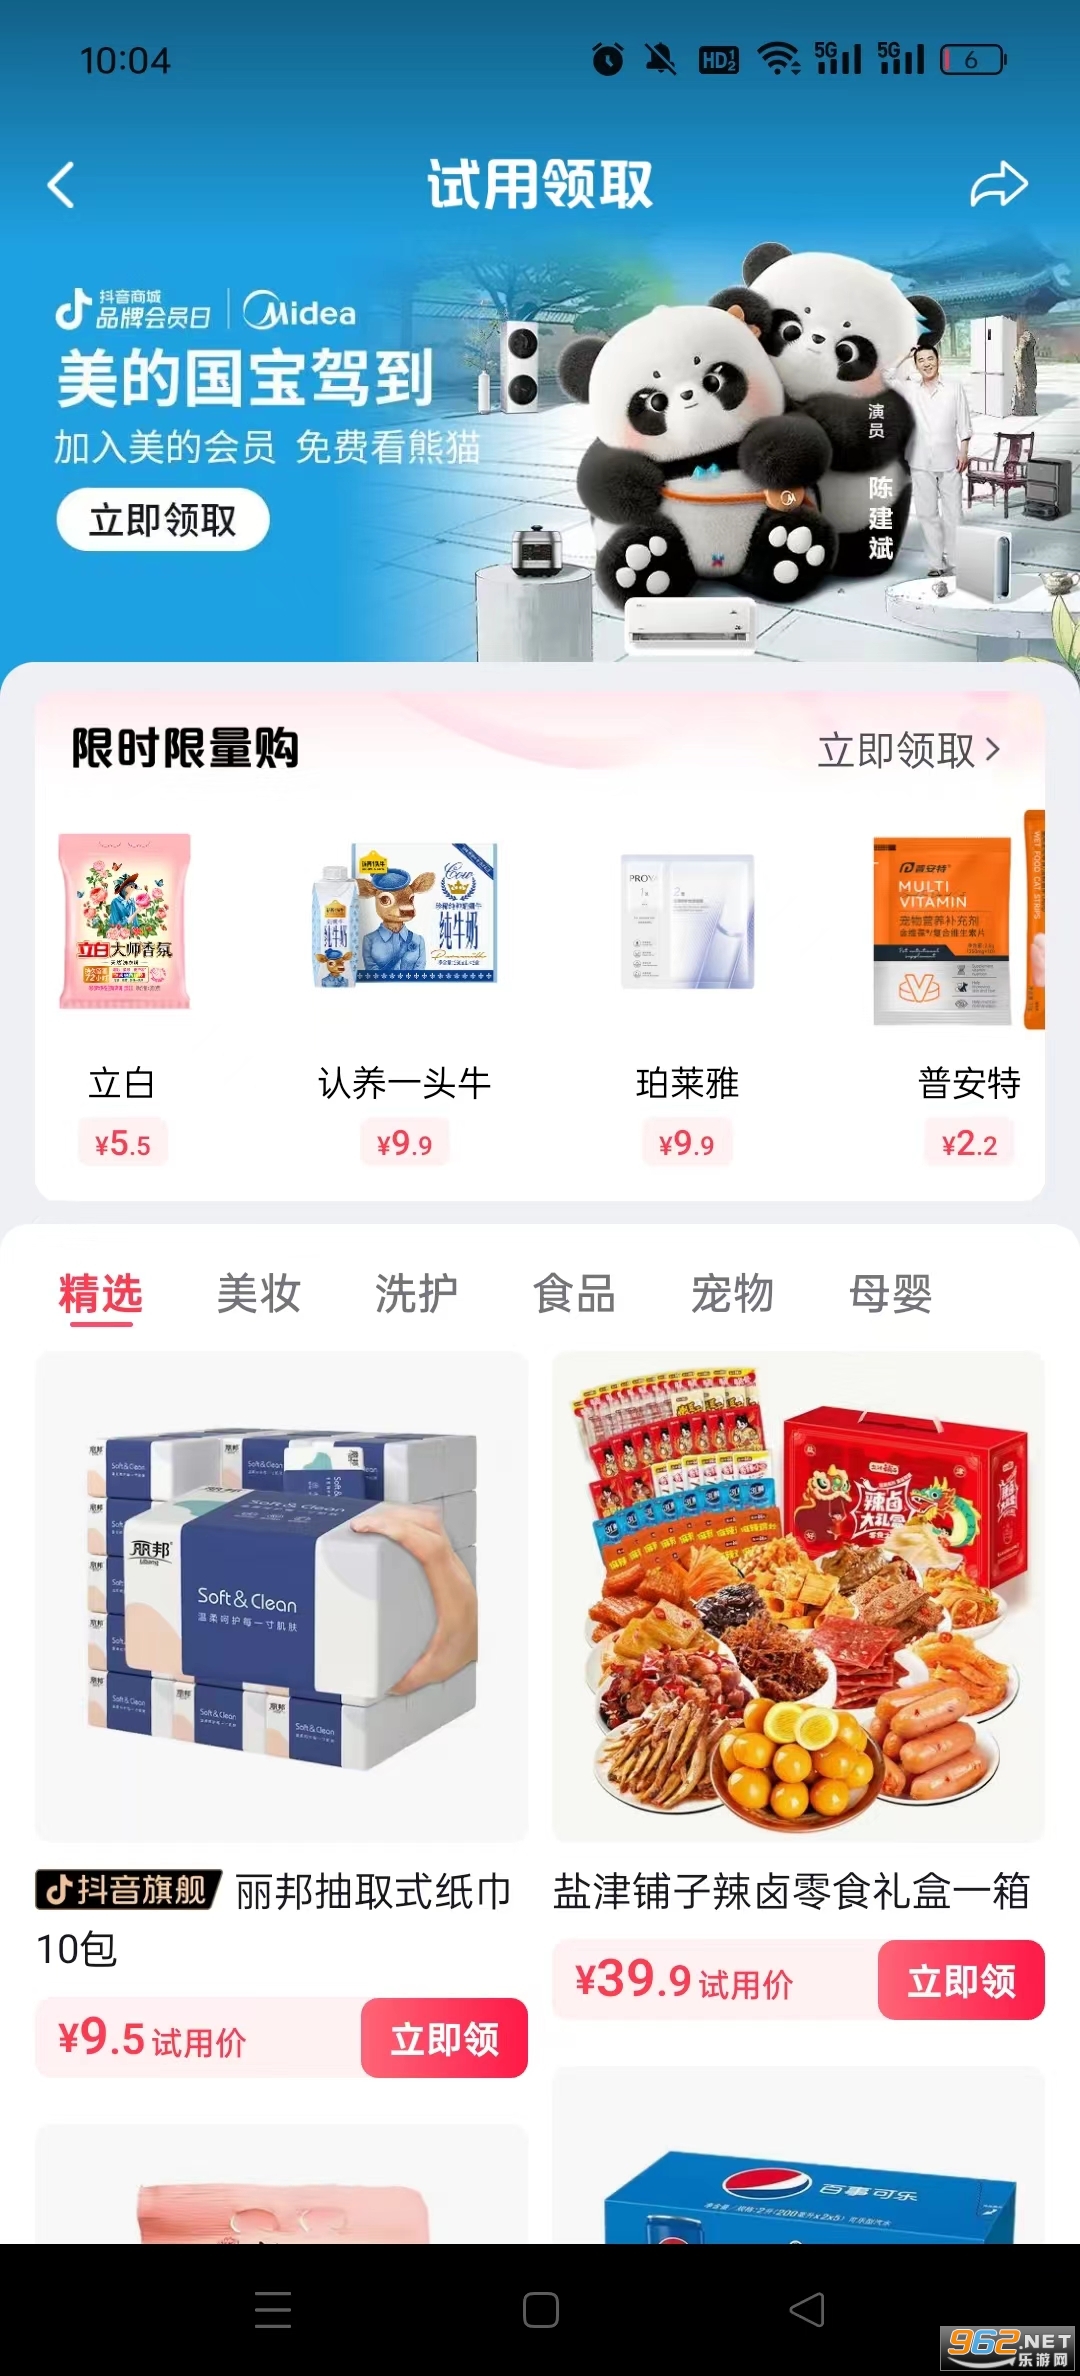  Screenshot 5 of app v28.2.0 (Tiaoyin Shopping Mall) in Tiaoyin Shopping Mall